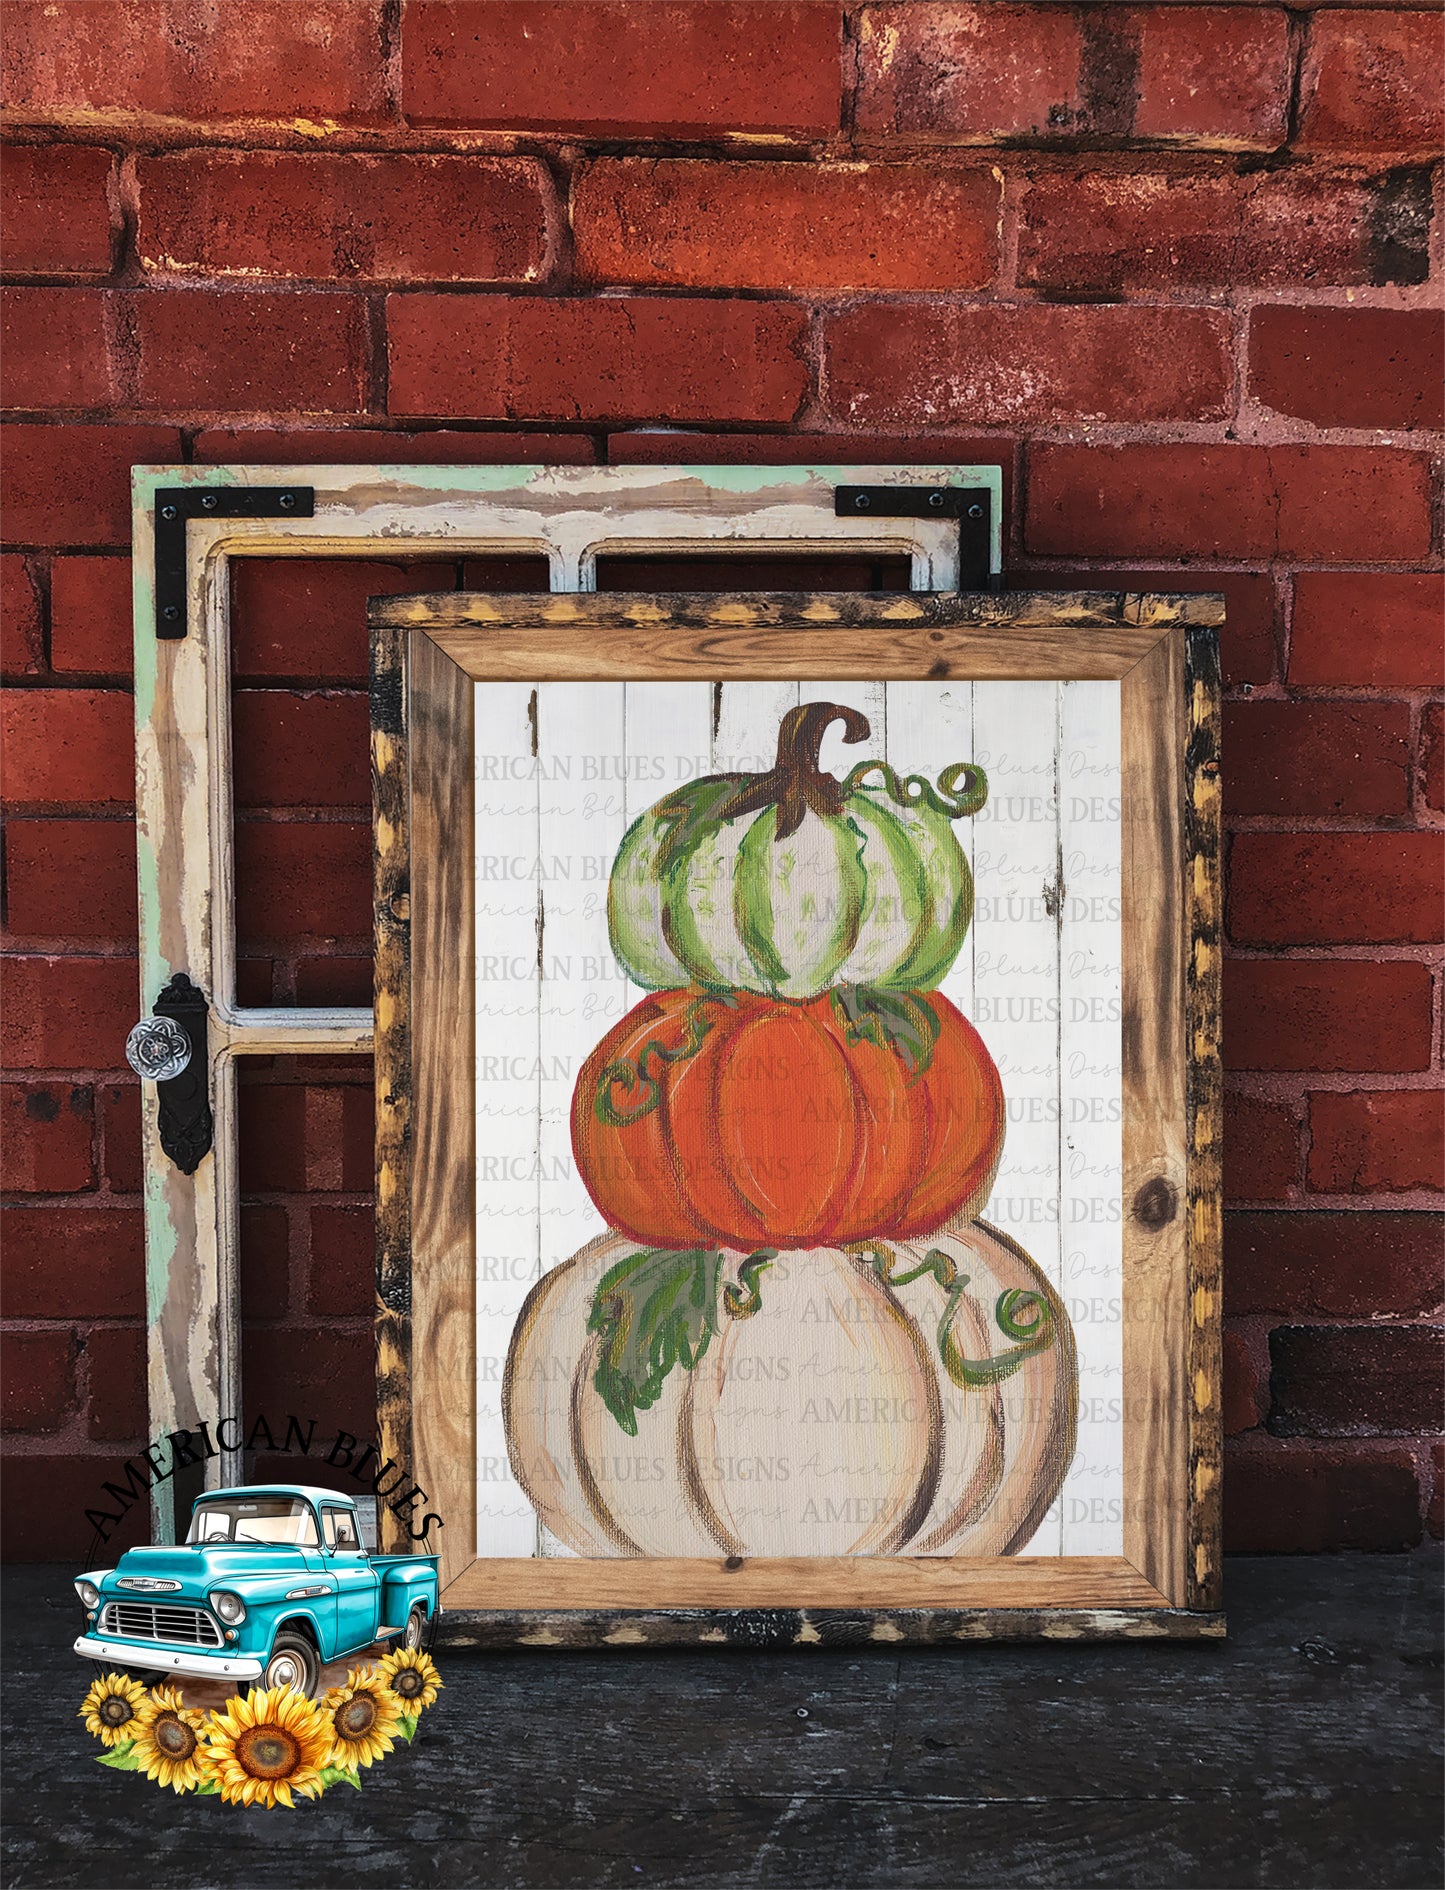 Painted pumpkin stack printable art | American Blues Designs